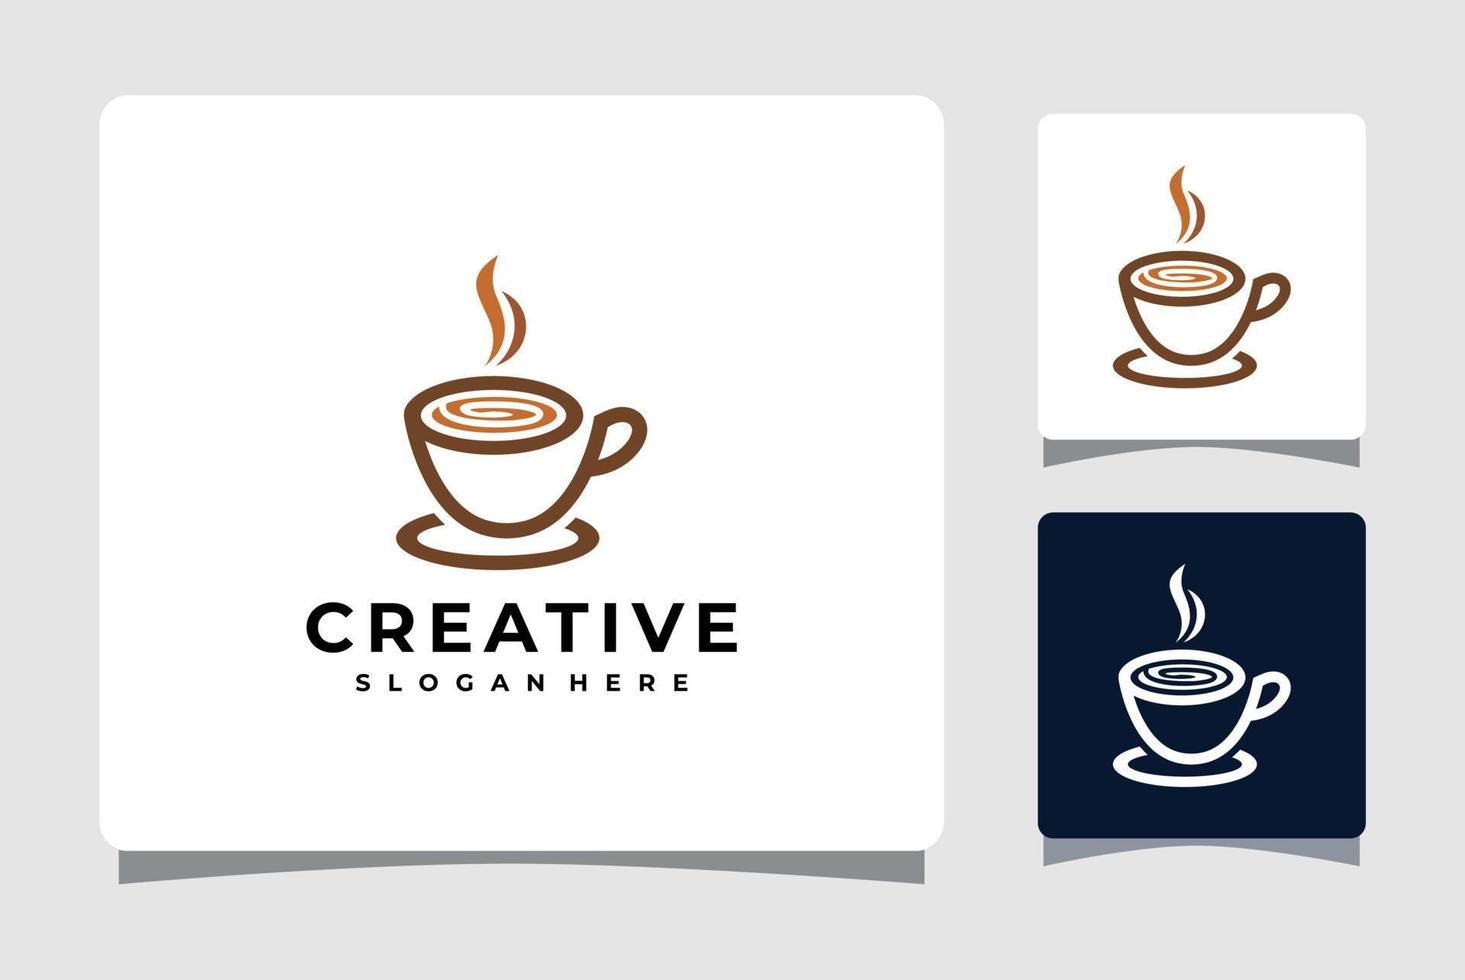 Inspiration für das Design von heißen Kaffee-Logo-Vorlagen vektor